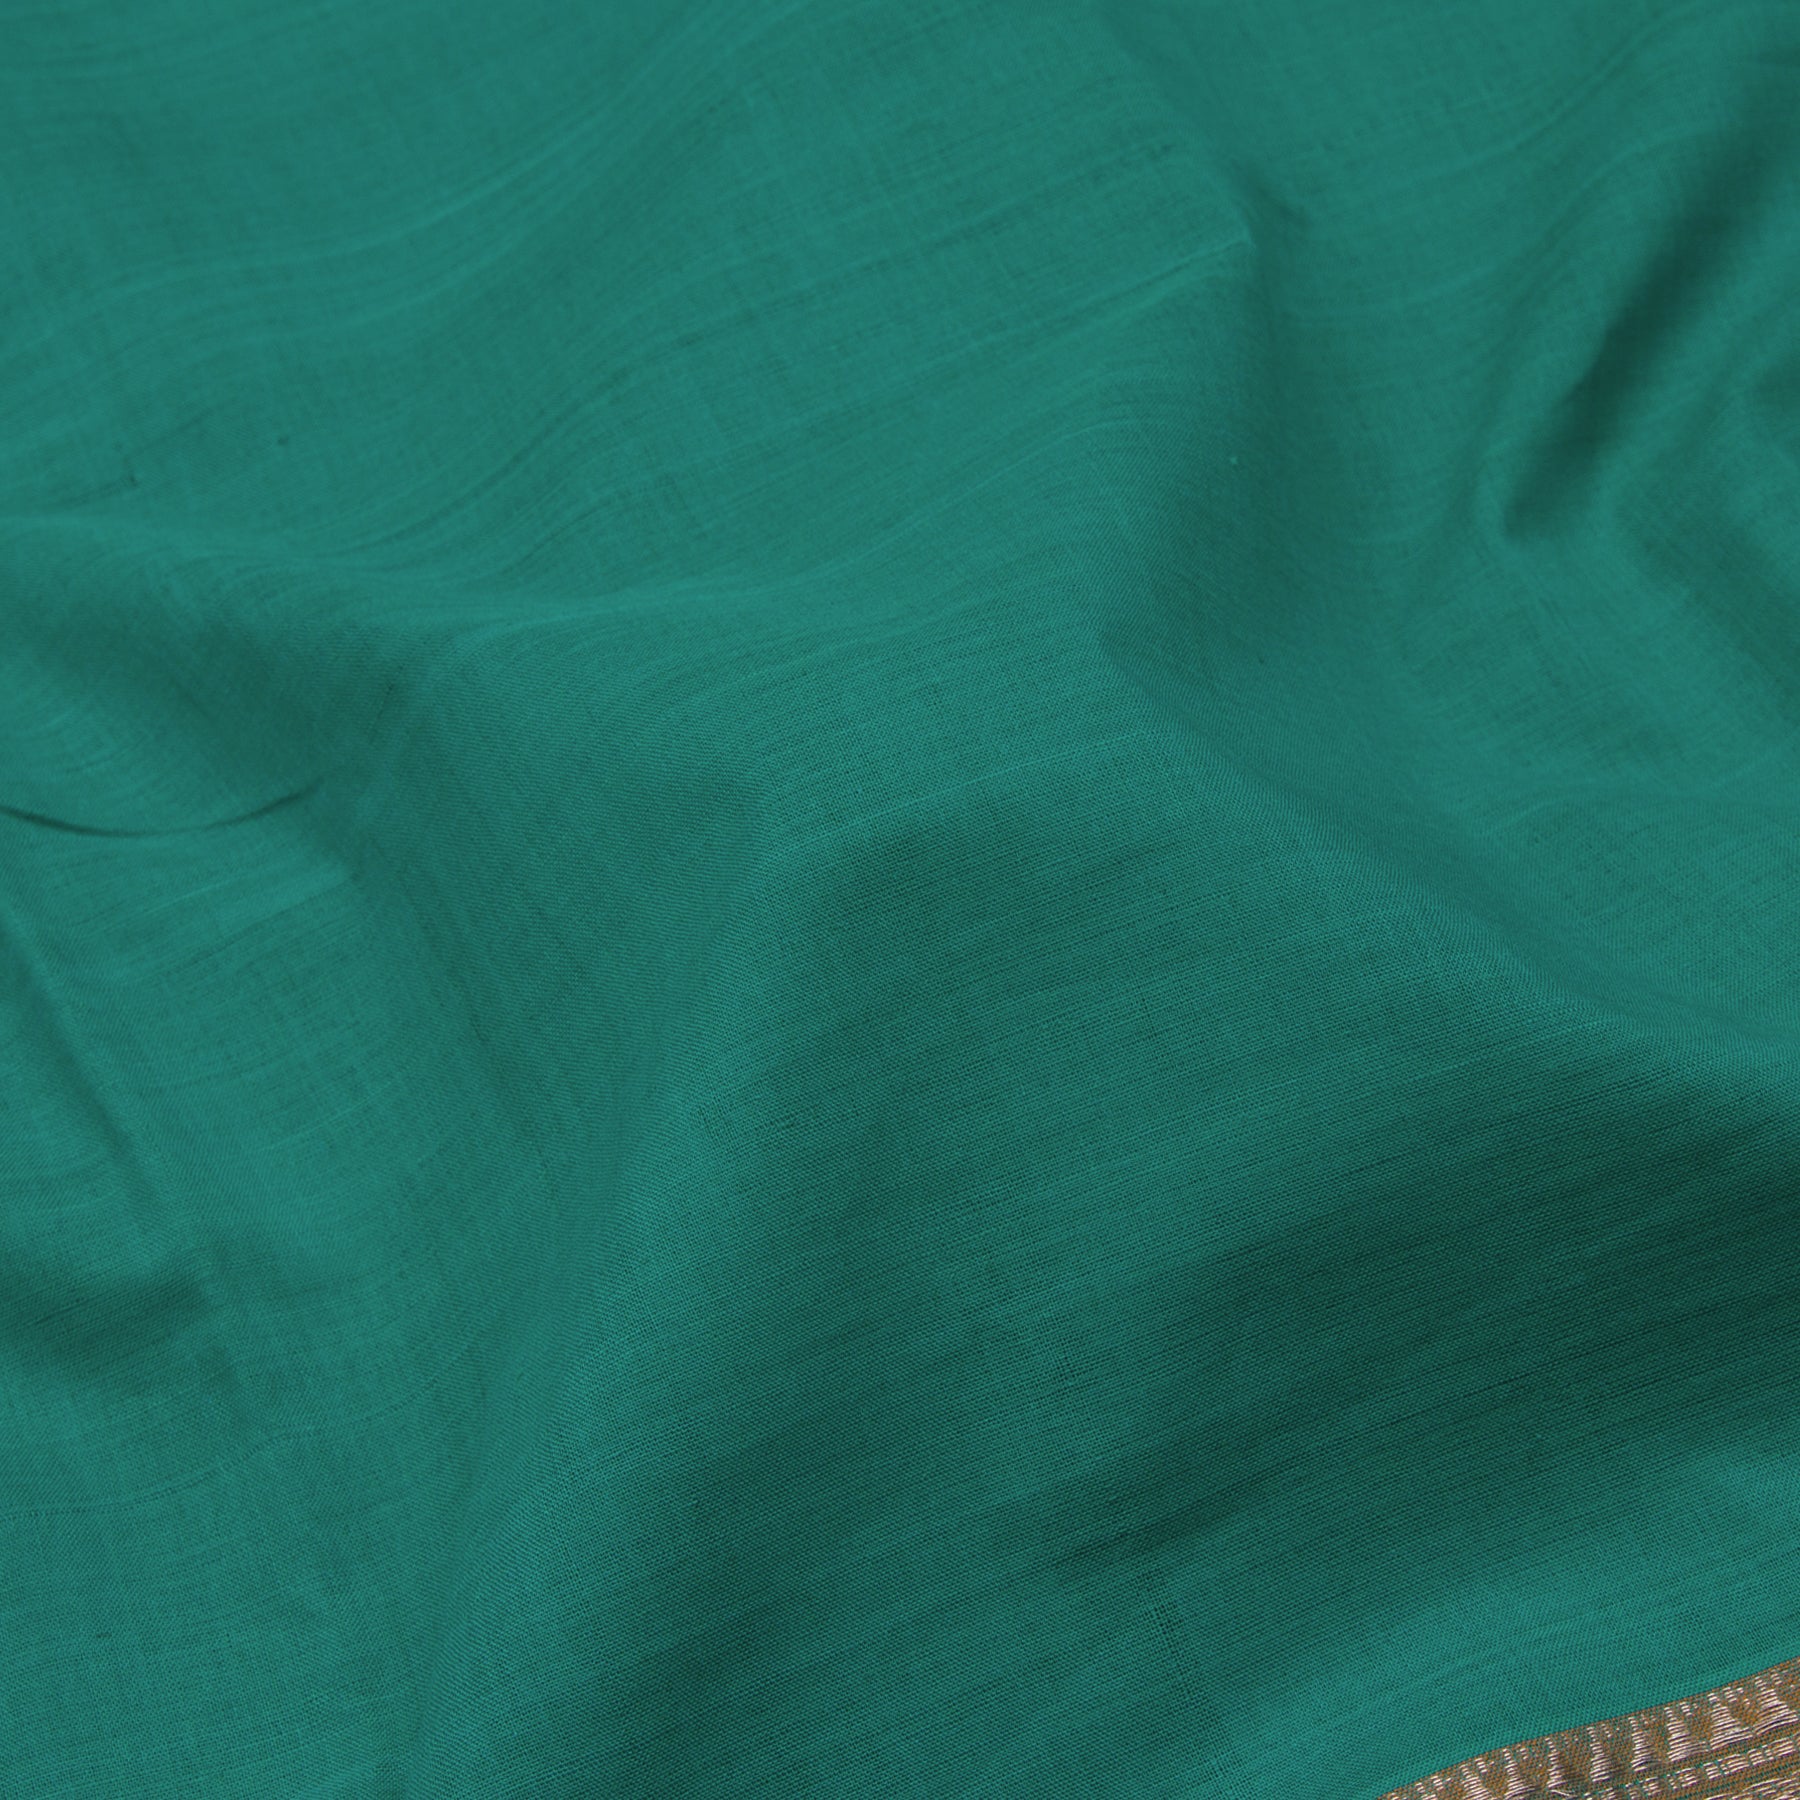 Kanakavalli Mangalgiri Cotton Sari 22-261-HS003-07259 - Fabric View